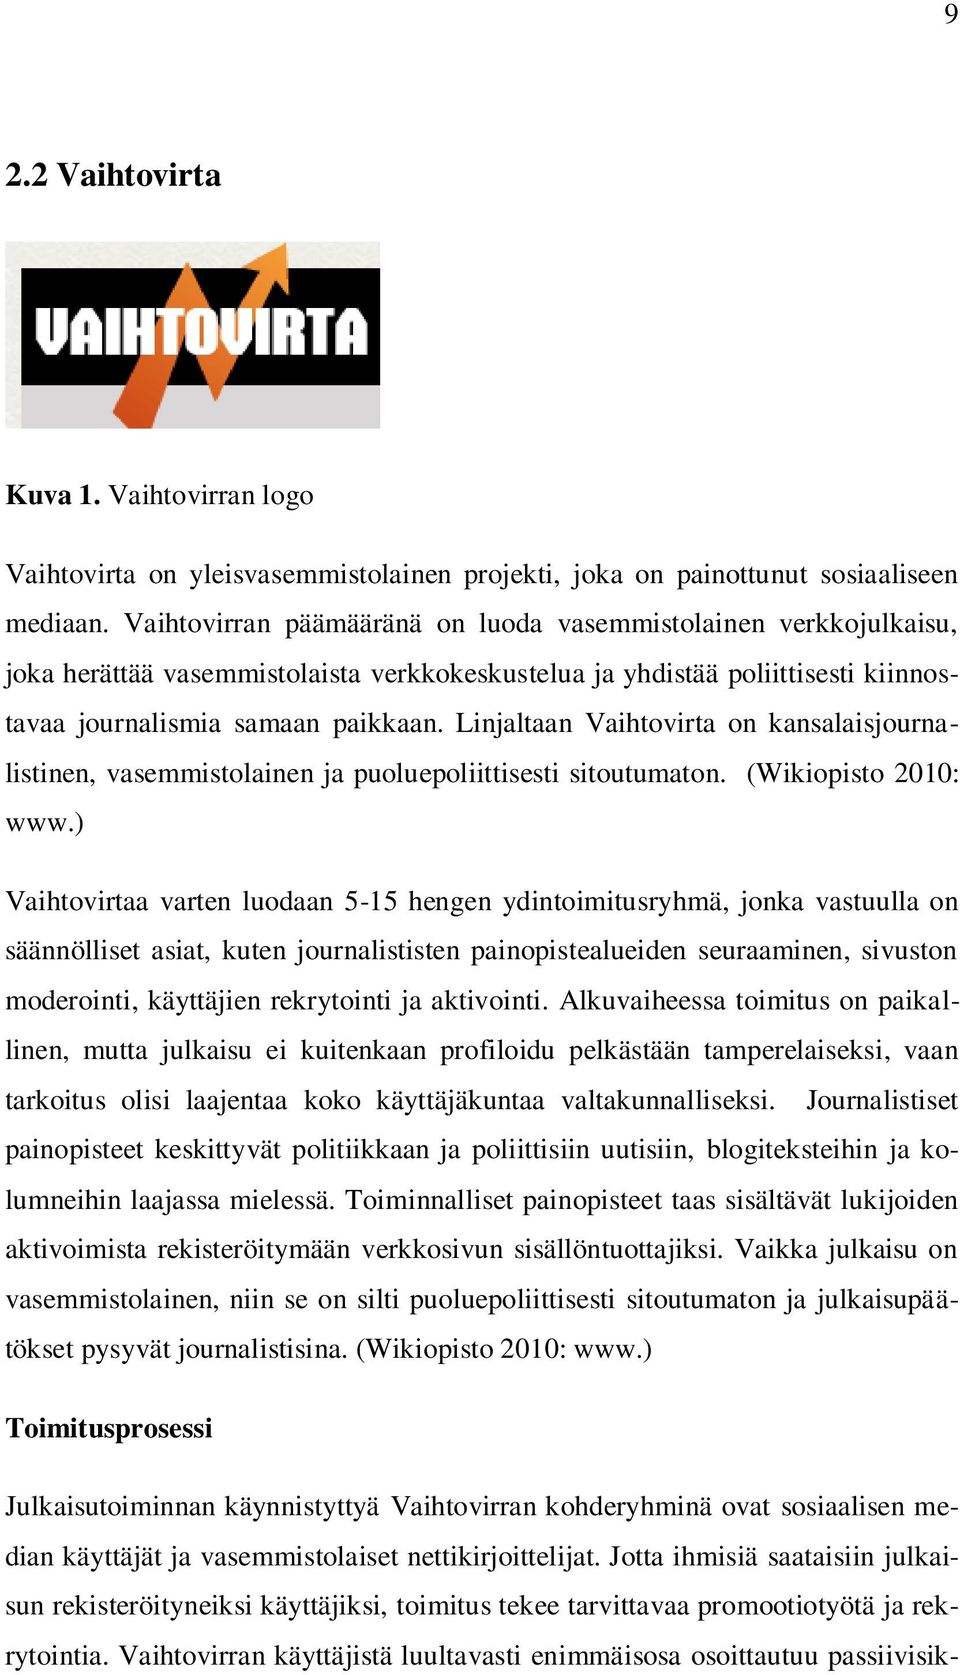 Linjaltaan Vaihtovirta on kansalaisjournalistinen, vasemmistolainen ja puoluepoliittisesti sitoutumaton. (Wikiopisto 2010: www.